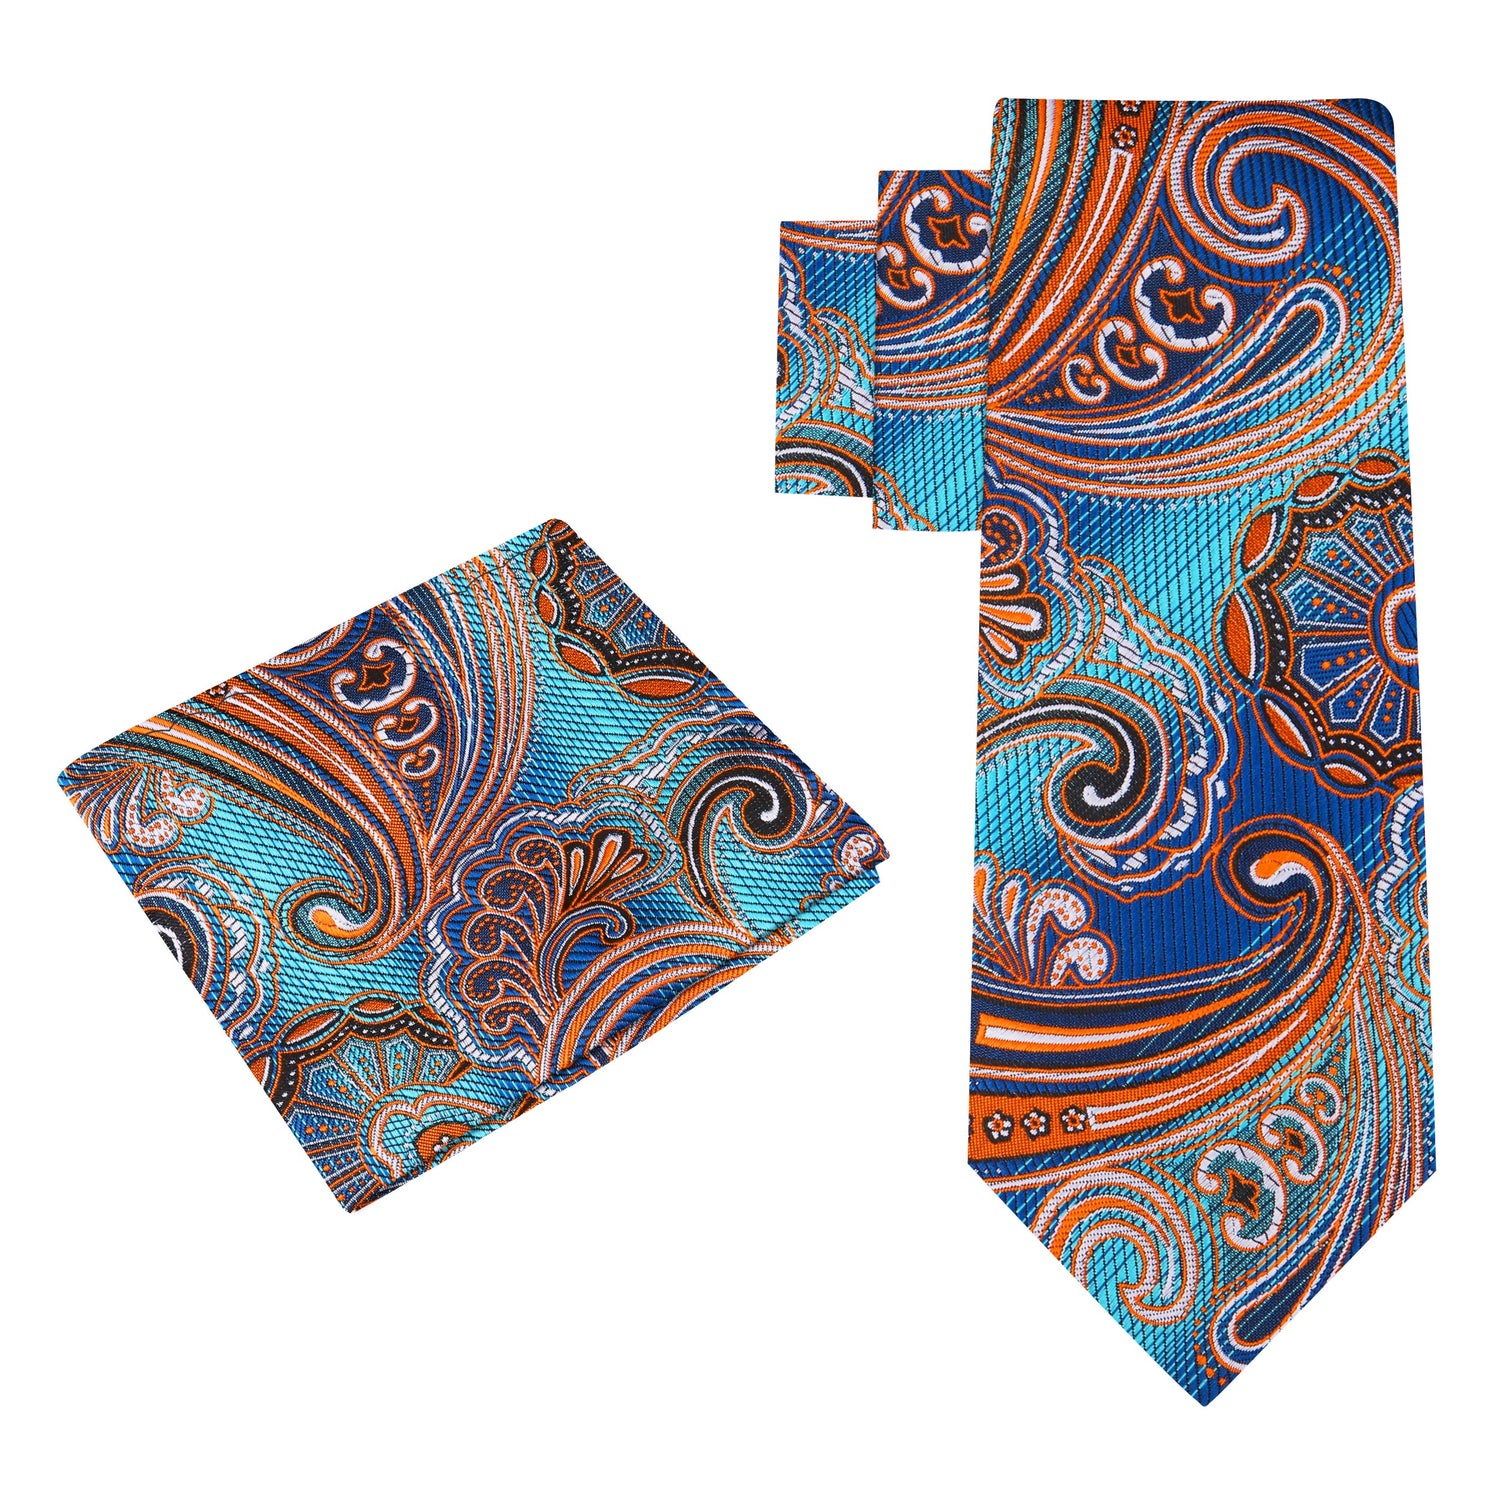 Alt View: A Blue, Orange Paisley Pattern Silk Necktie, Matching Silk Pocket Square